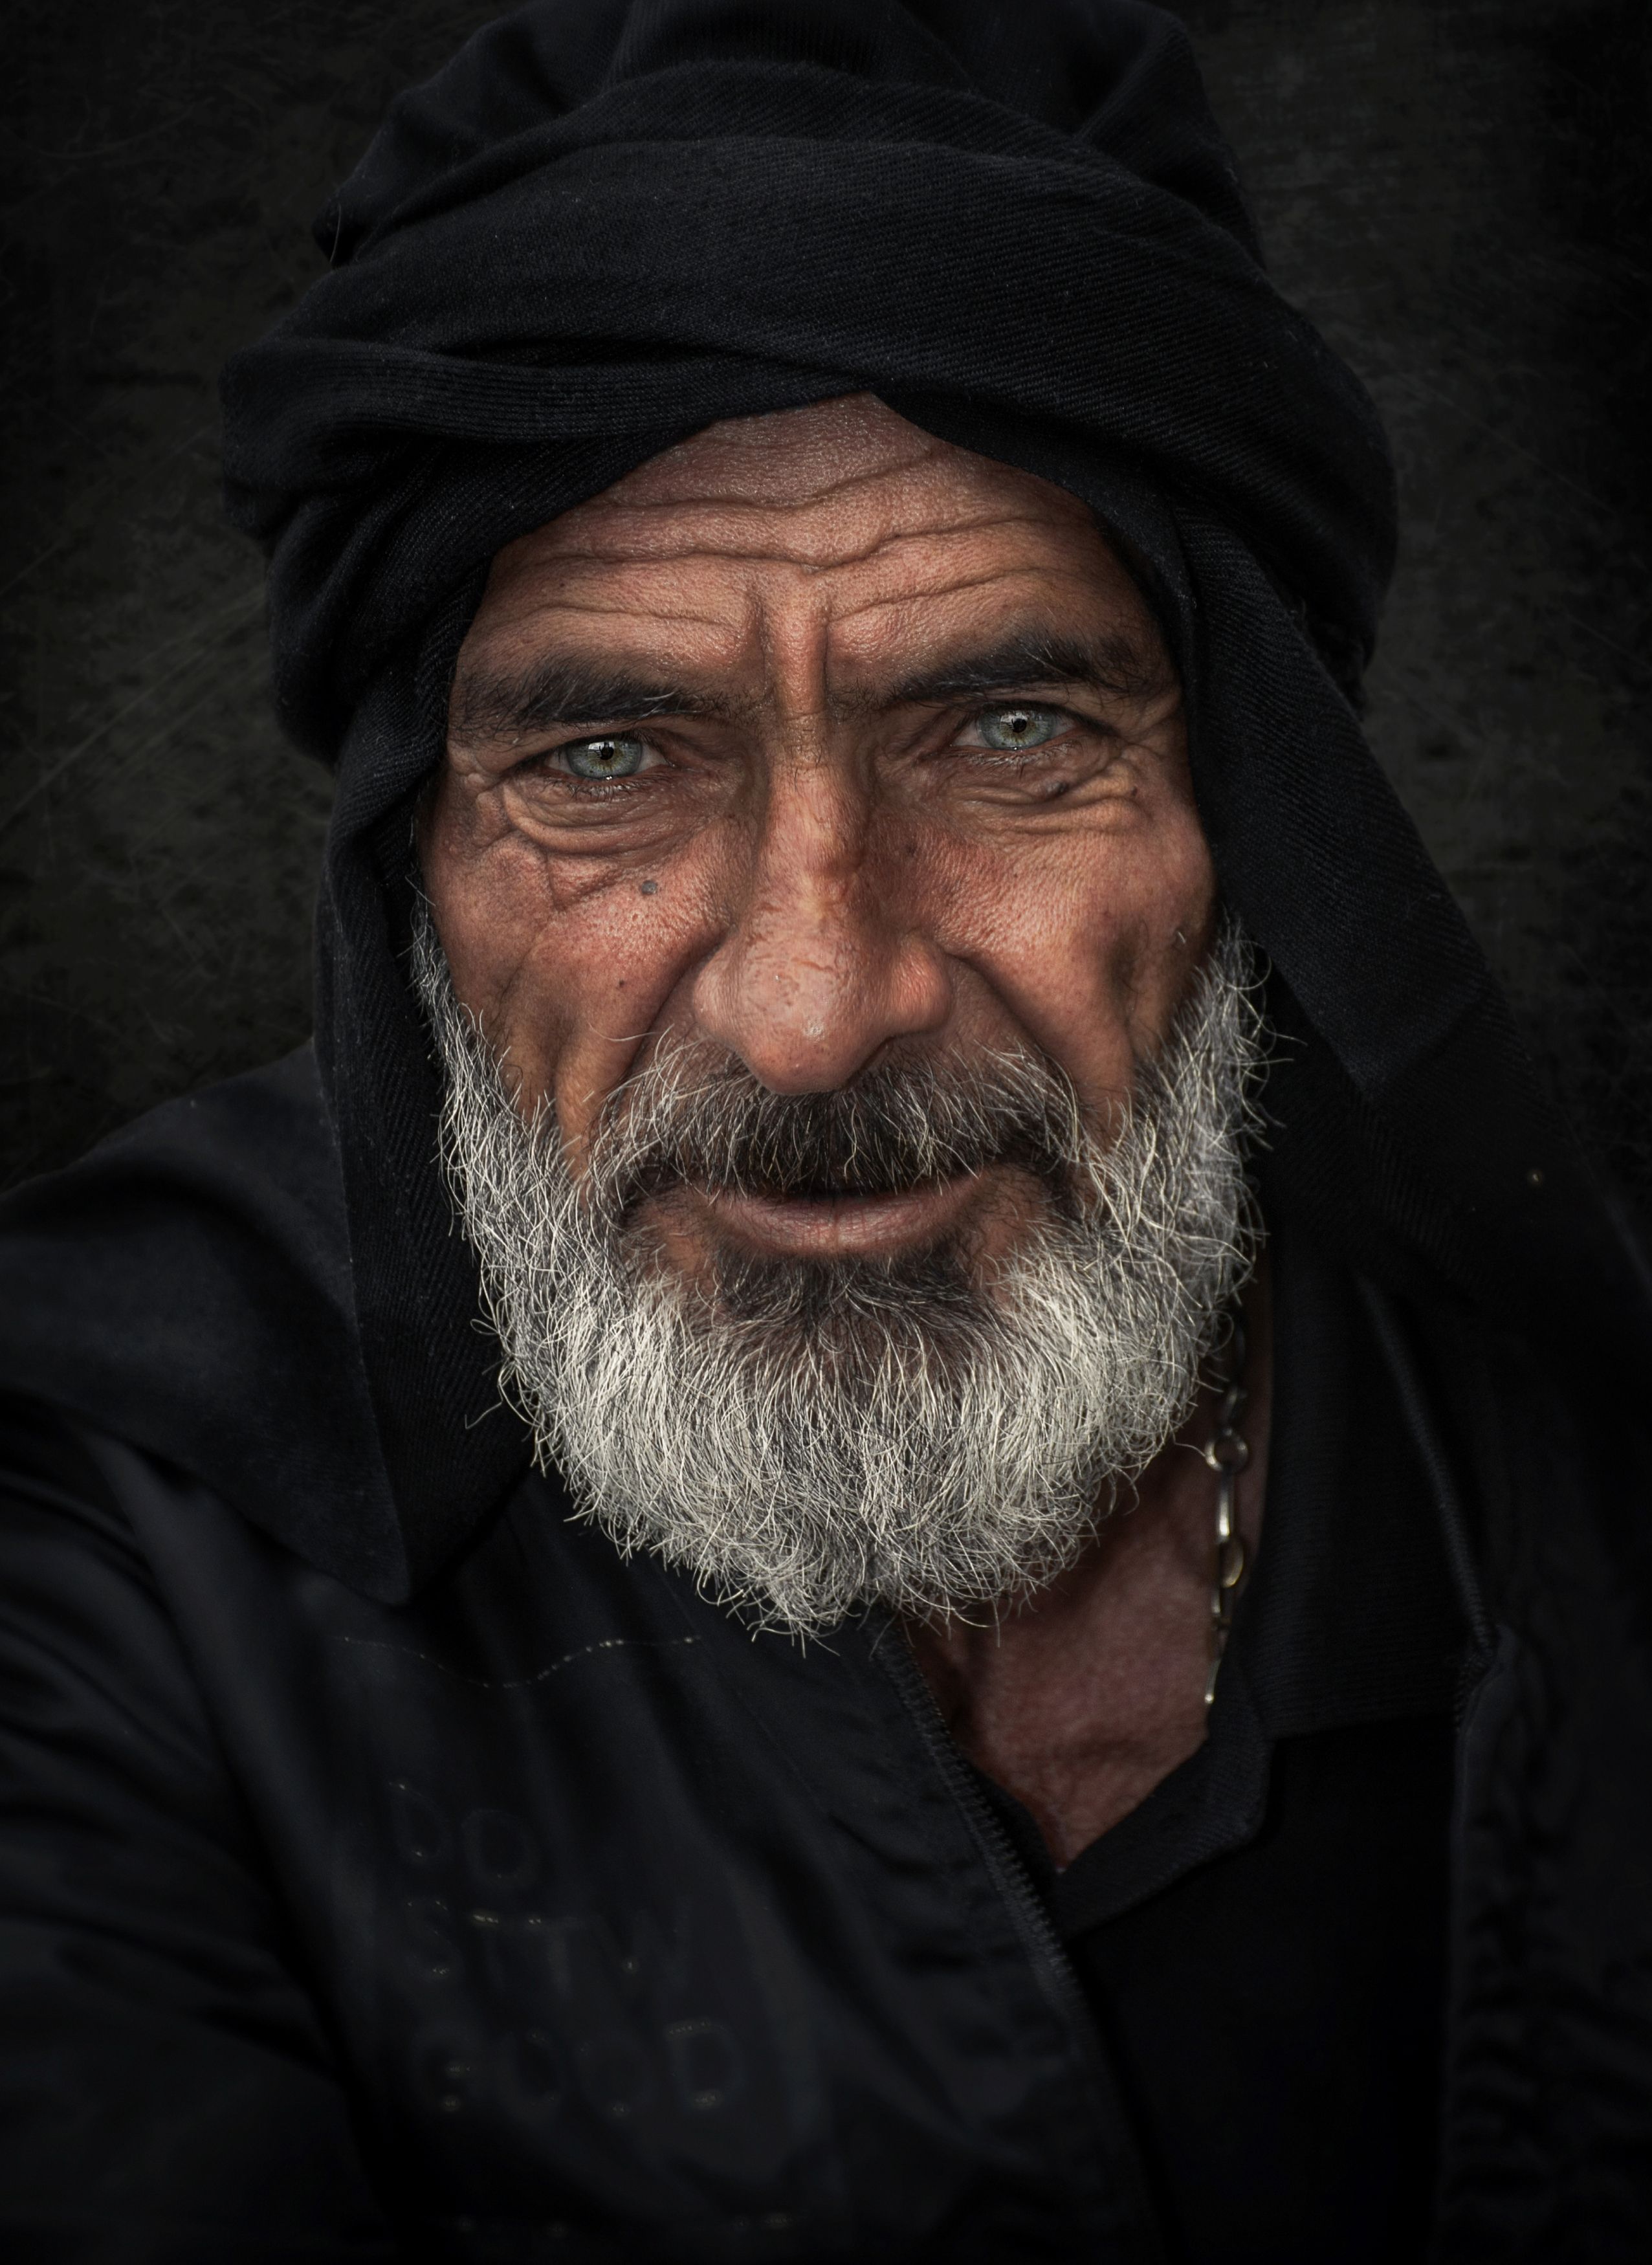 #portrait #people #face #eyes #skin #bread, Mehdi Zavvar